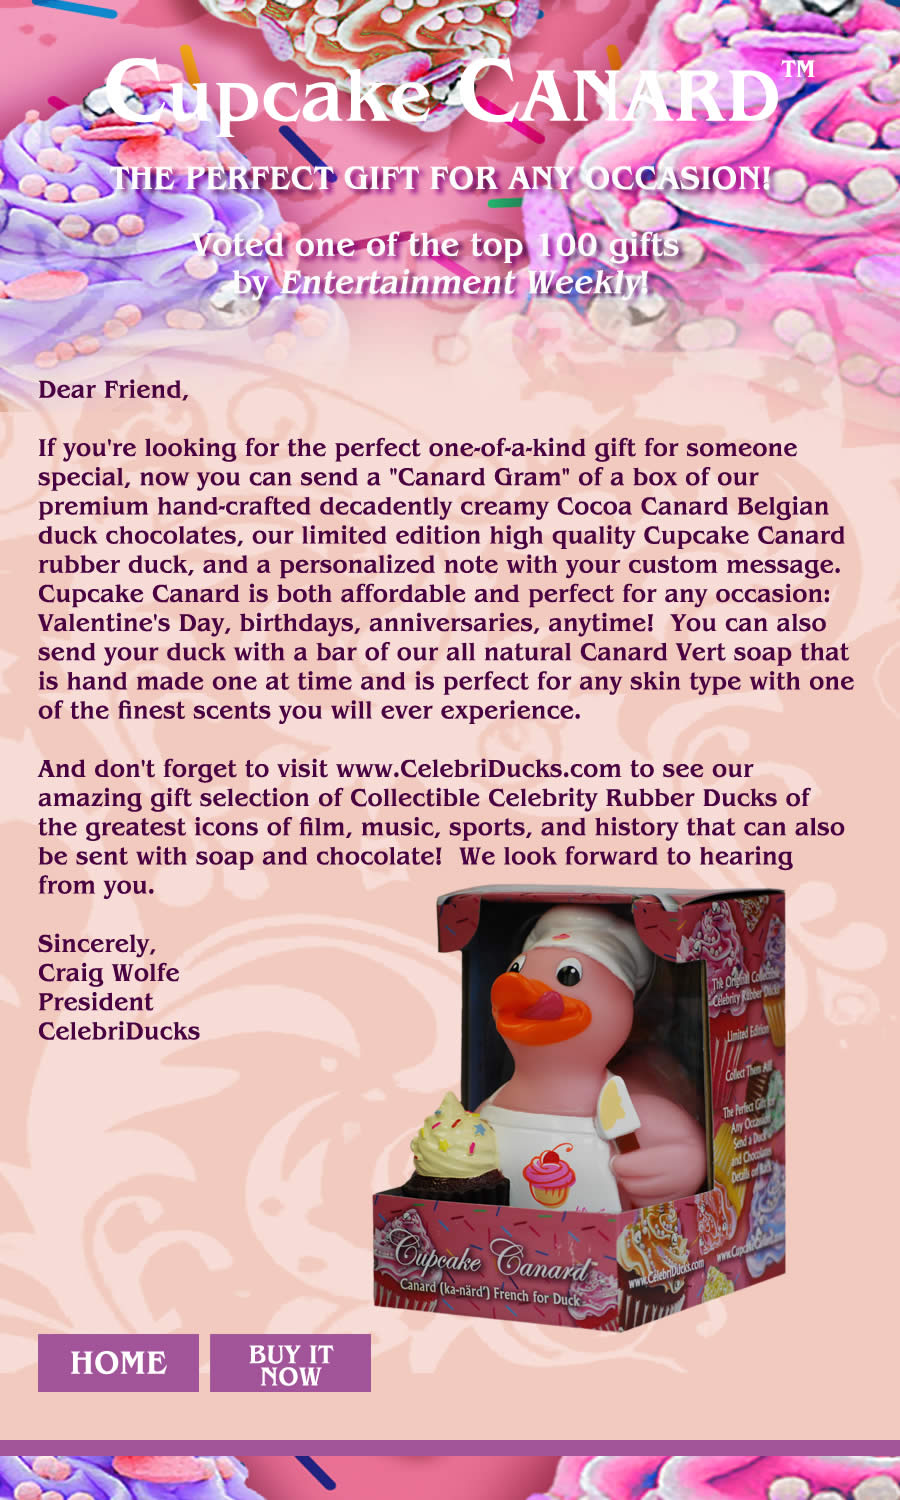 Cupcake Canard